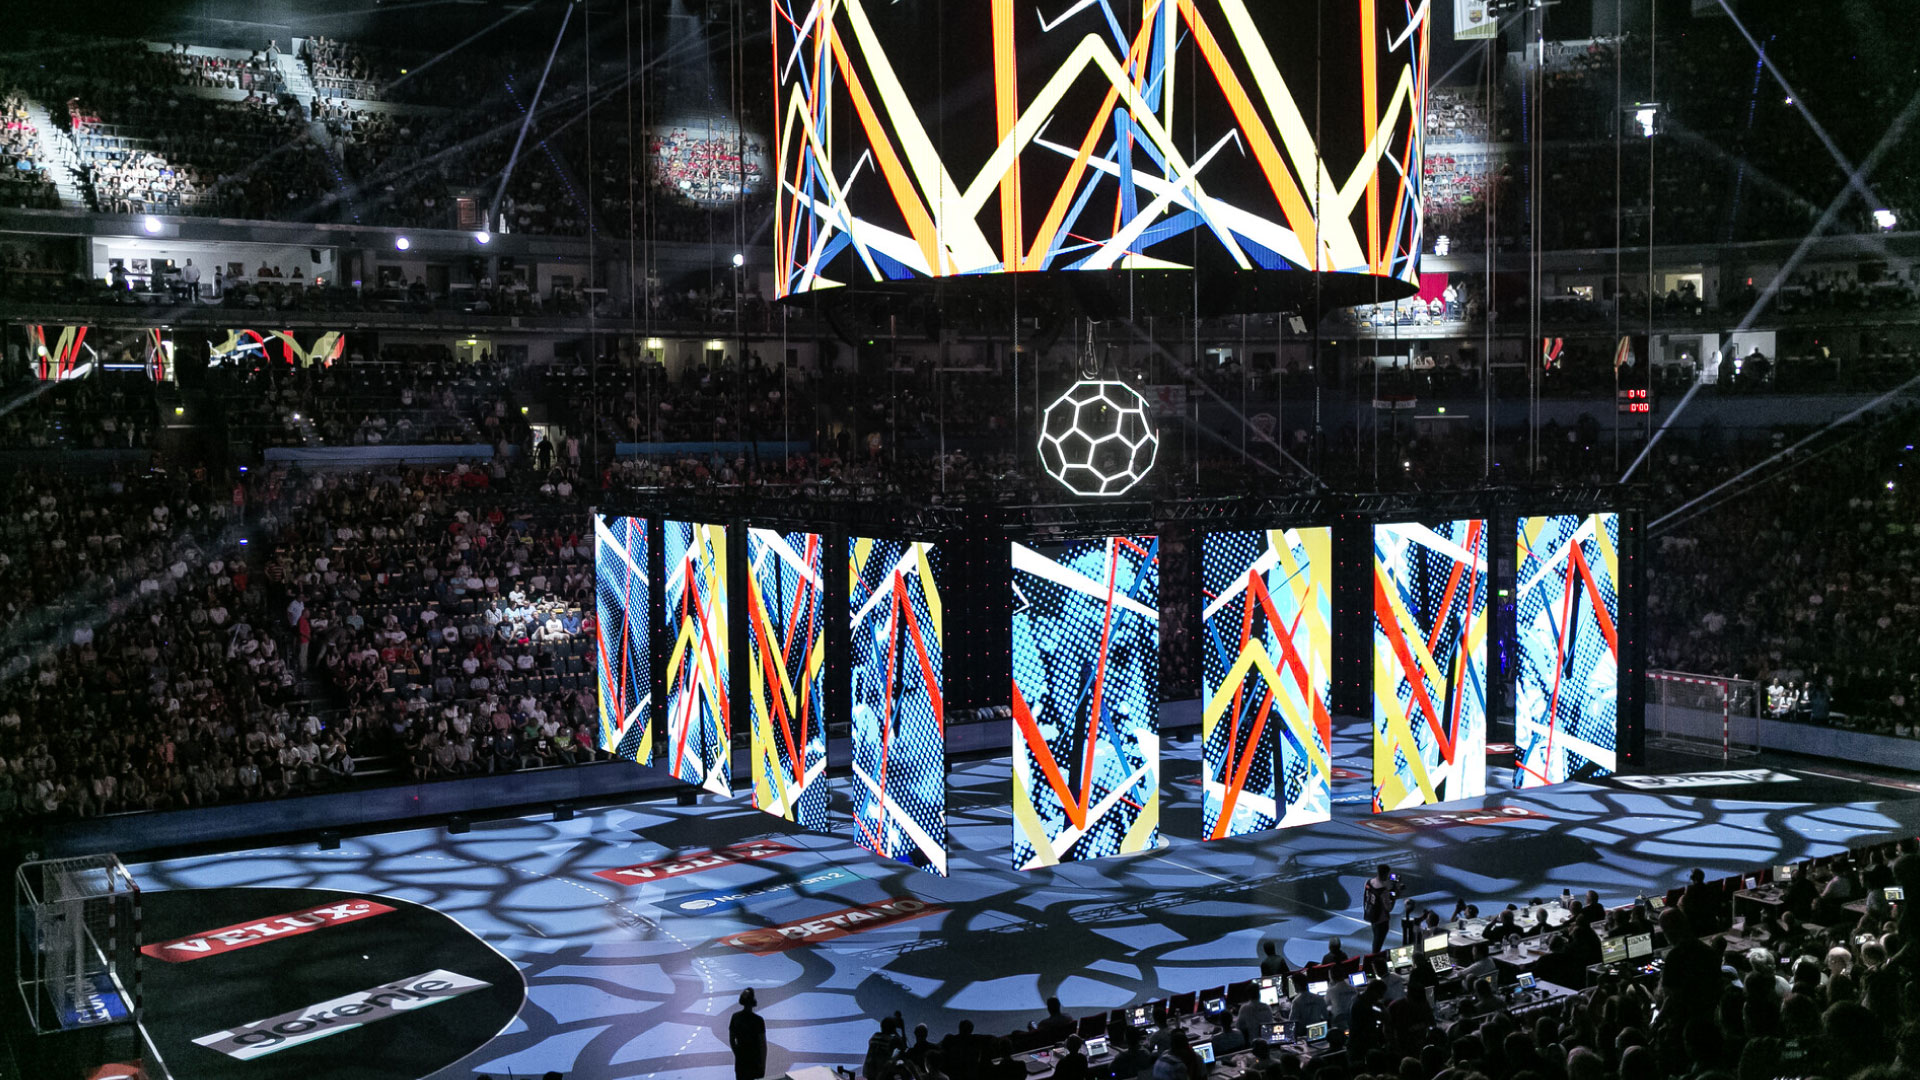 Finale de la Ligue européenne des champions de handball, à Cologne, Lanxess Arena. PRG a fourni des écrans LED pour cet événement.